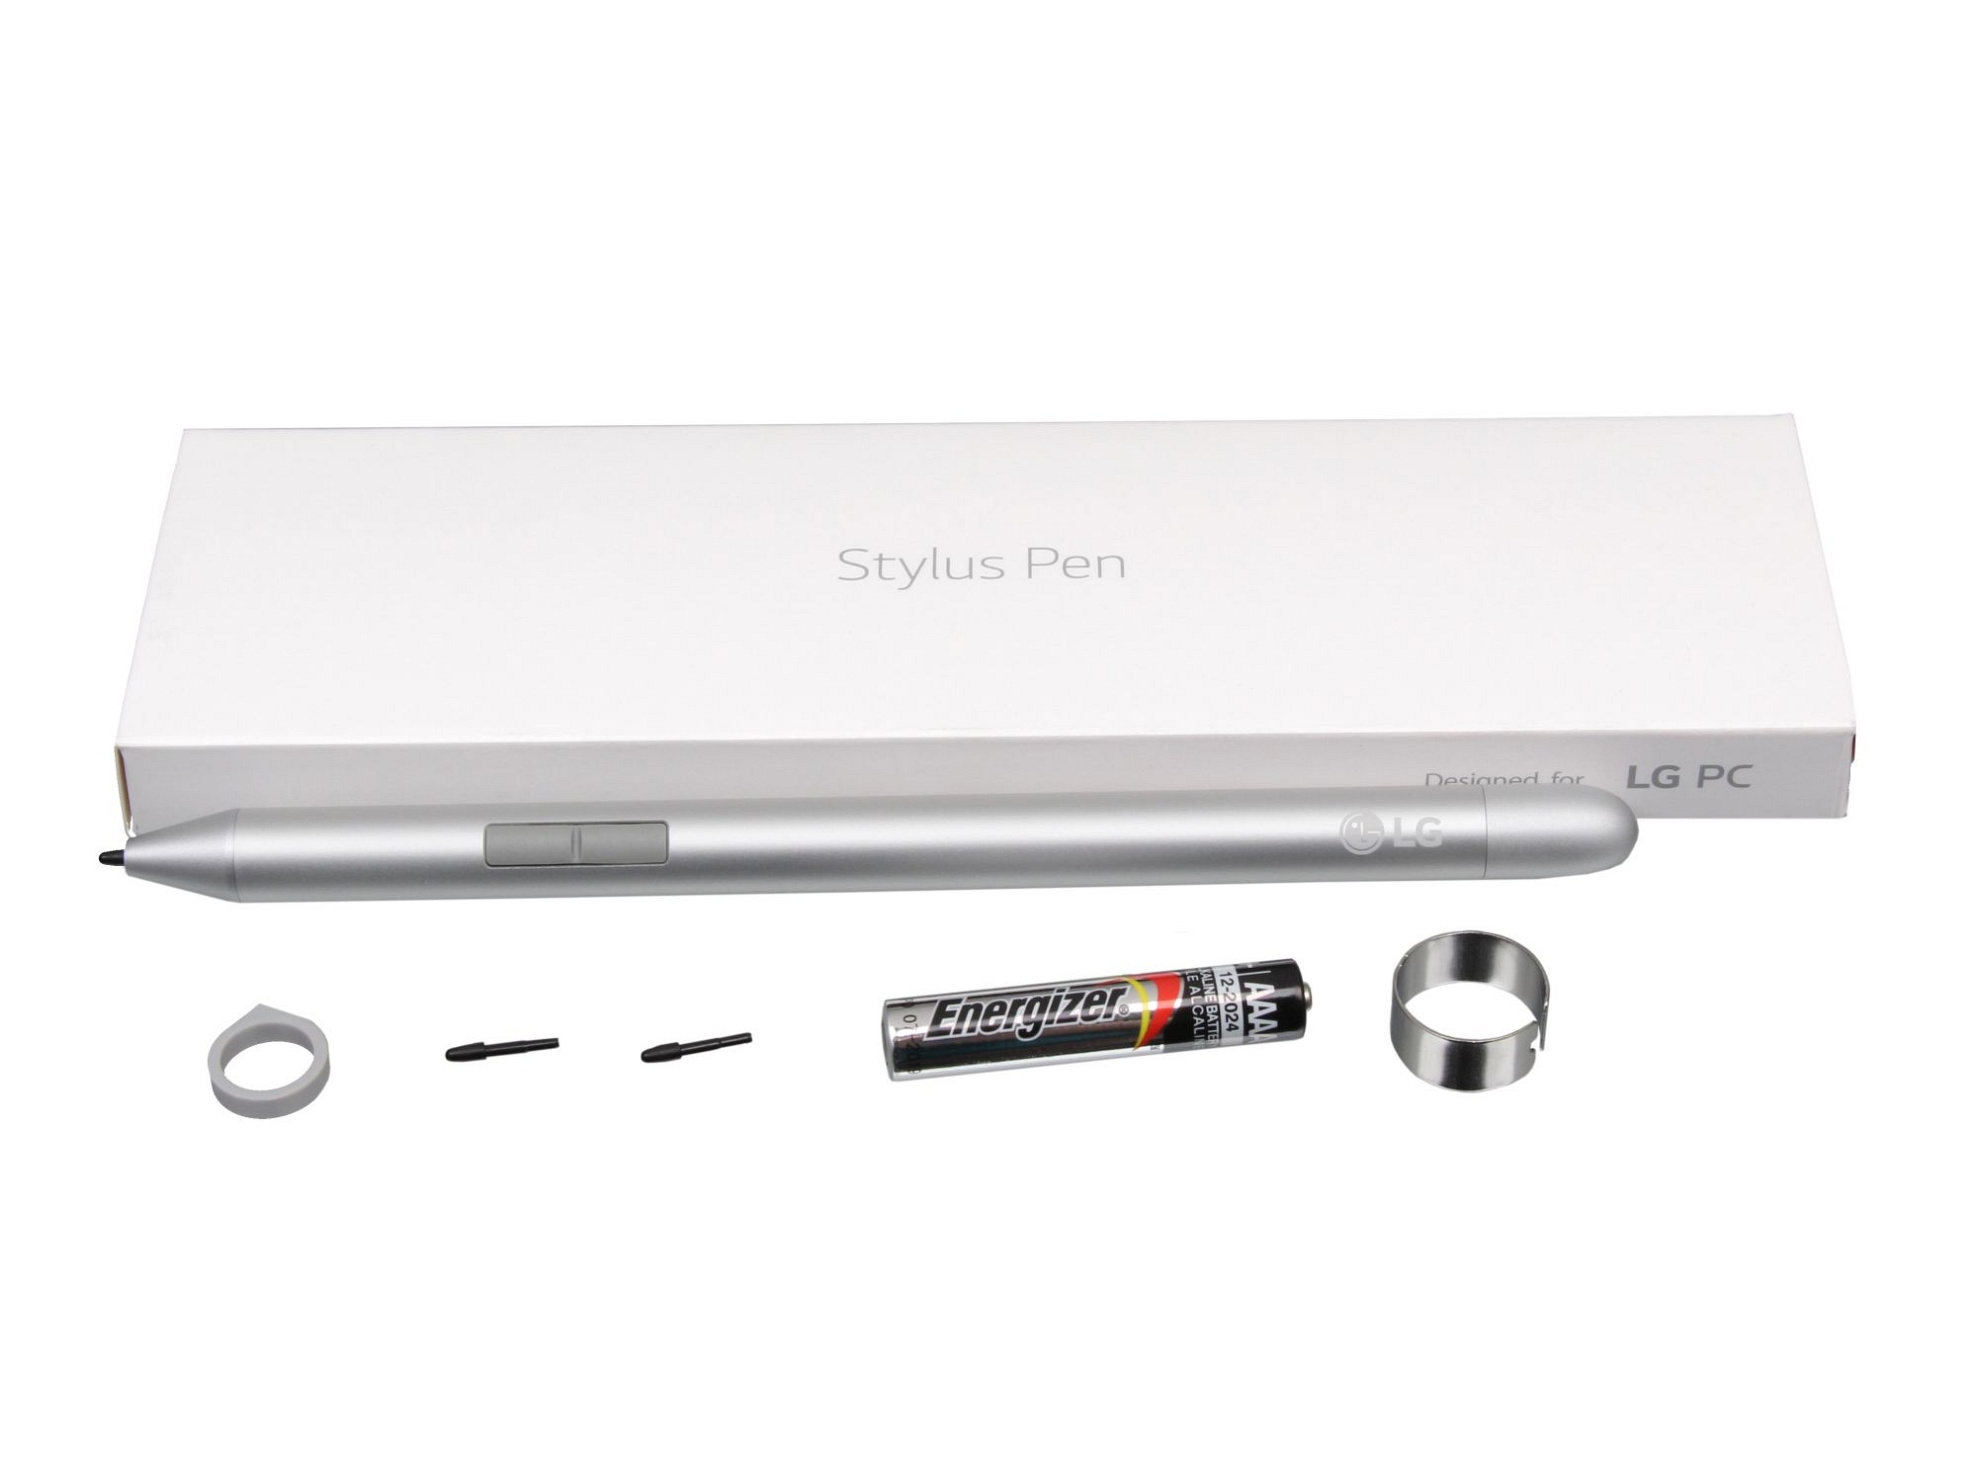 LG PEA1 Stylus Pen inkl. Batterie